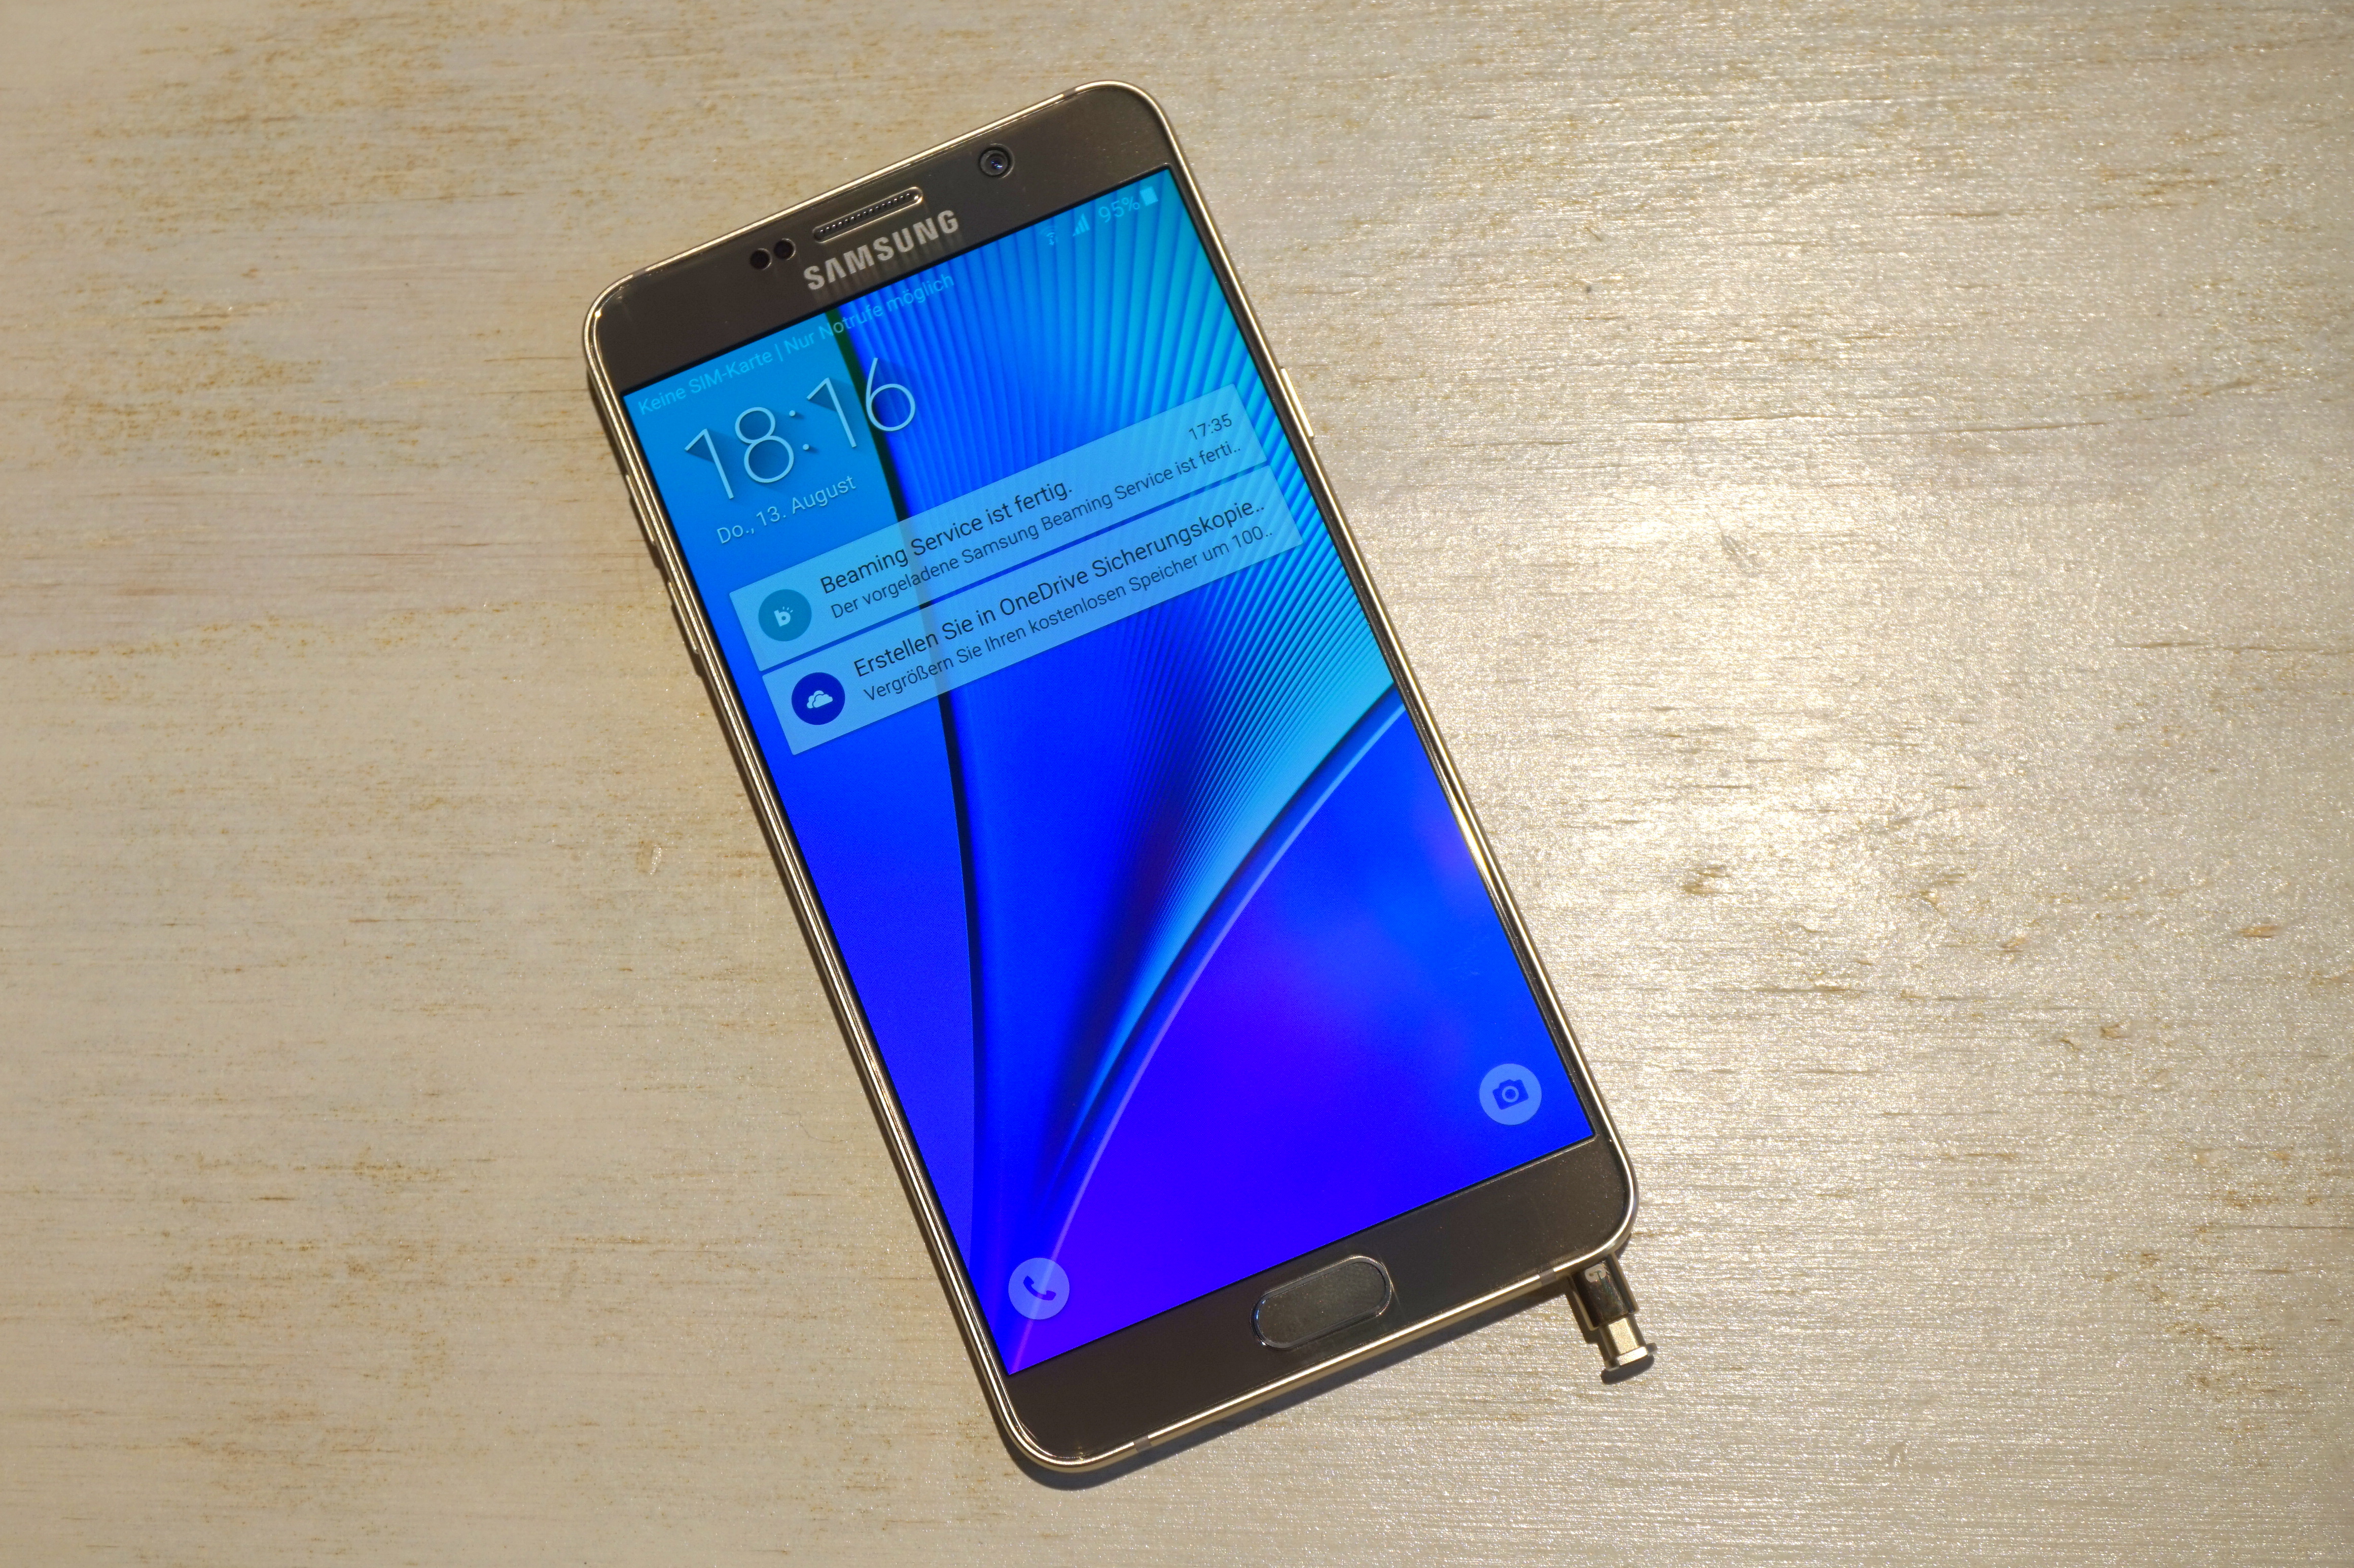 الكوكايين اغتيال مأساوي  مراجعة للهاتف المحمول Samsung Galaxy Note5:أفضل هاتف من سامسونج إلى الآن -  التقنية بلا حدود